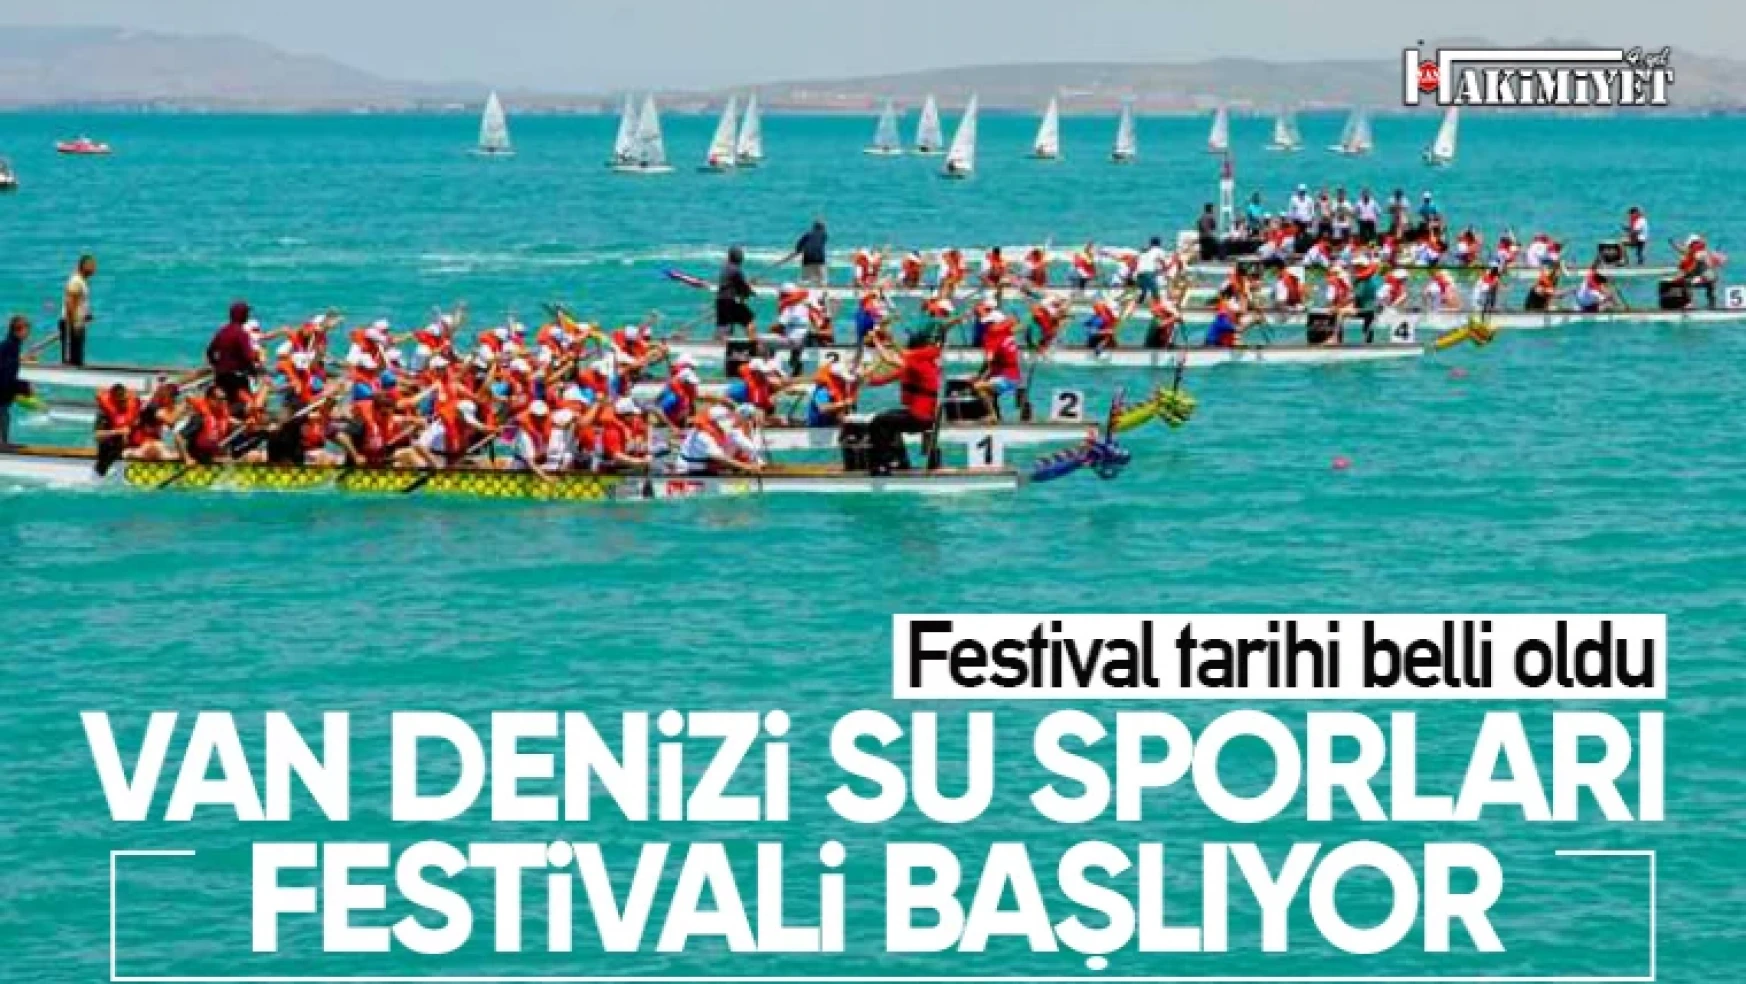 Van denizi su sporları festivali başlıyor!